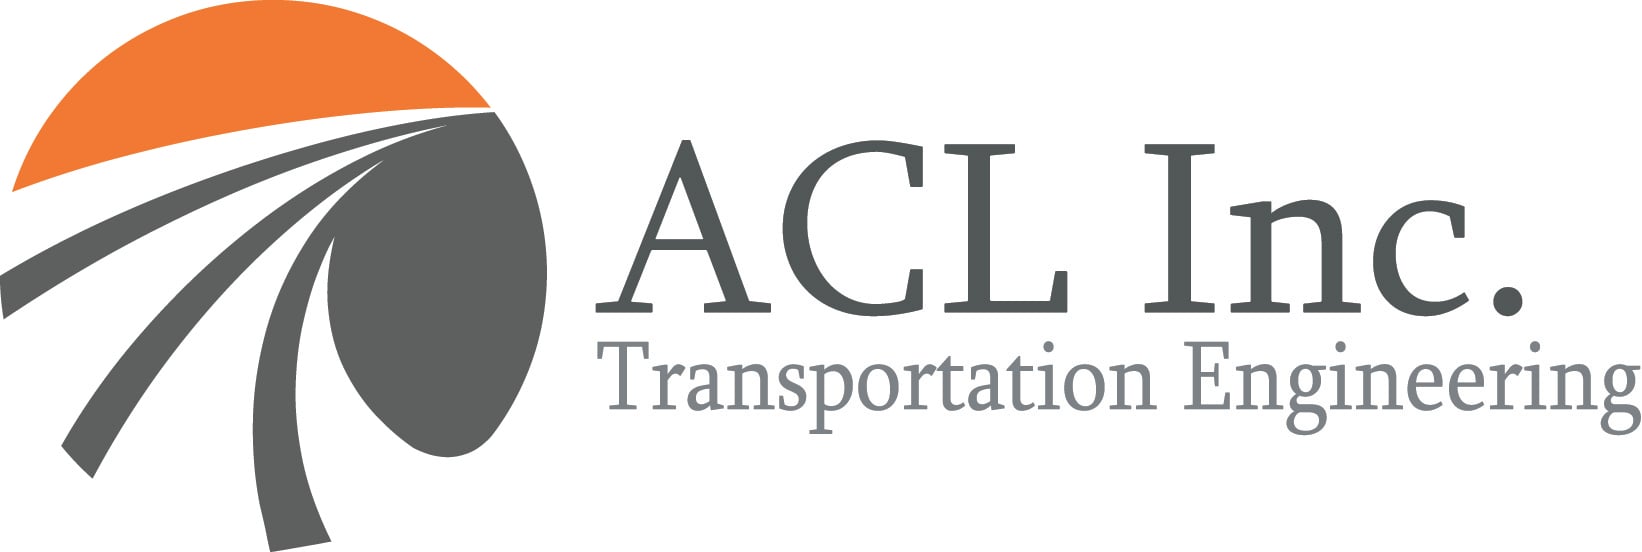 ACL logo.jpg detail image